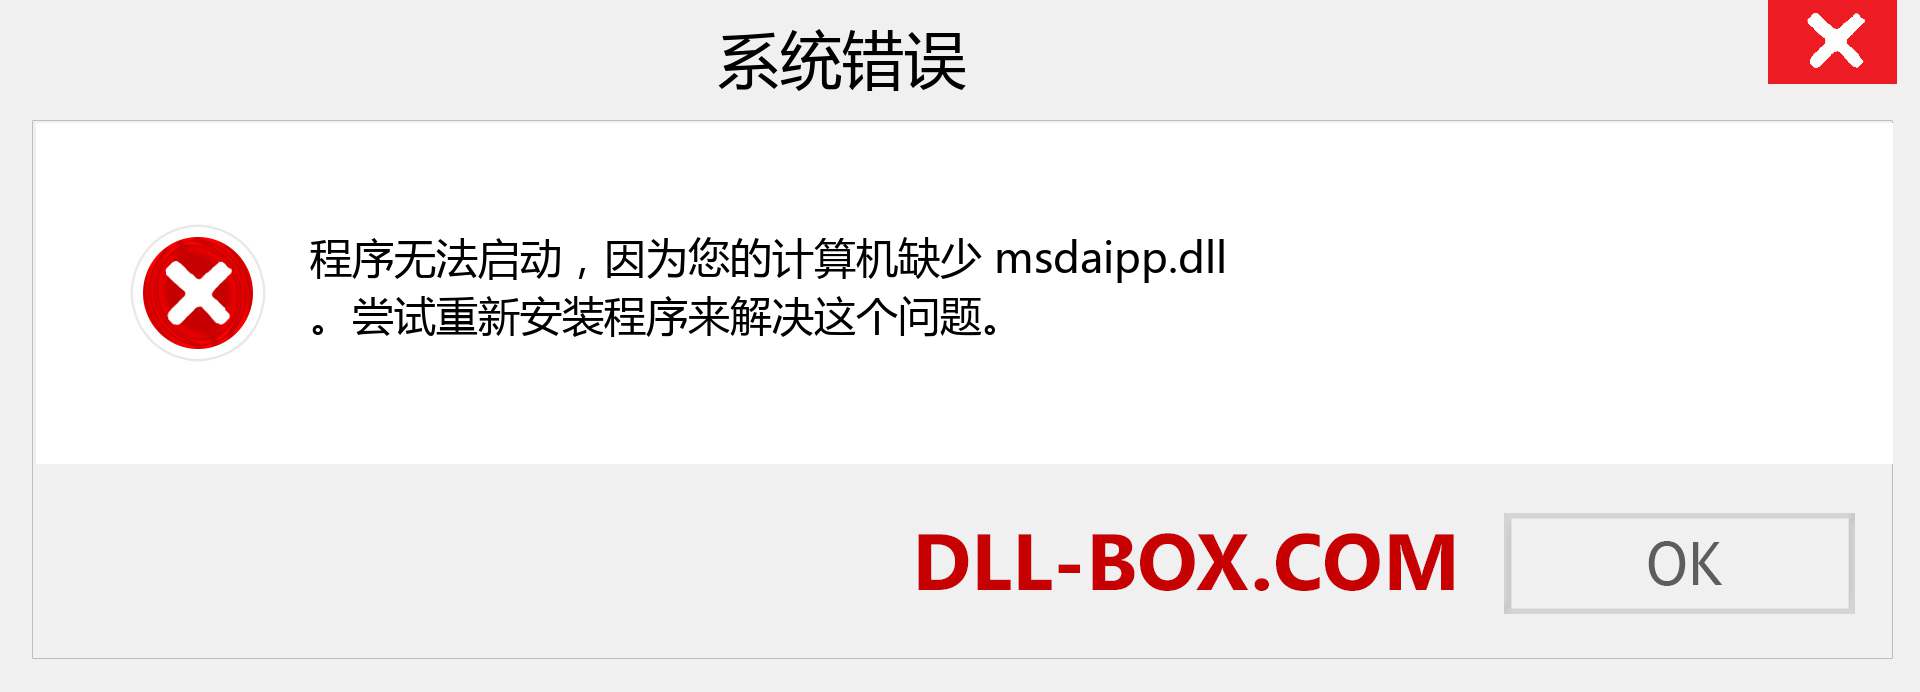 msdaipp.dll 文件丢失？。 适用于 Windows 7、8、10 的下载 - 修复 Windows、照片、图像上的 msdaipp dll 丢失错误